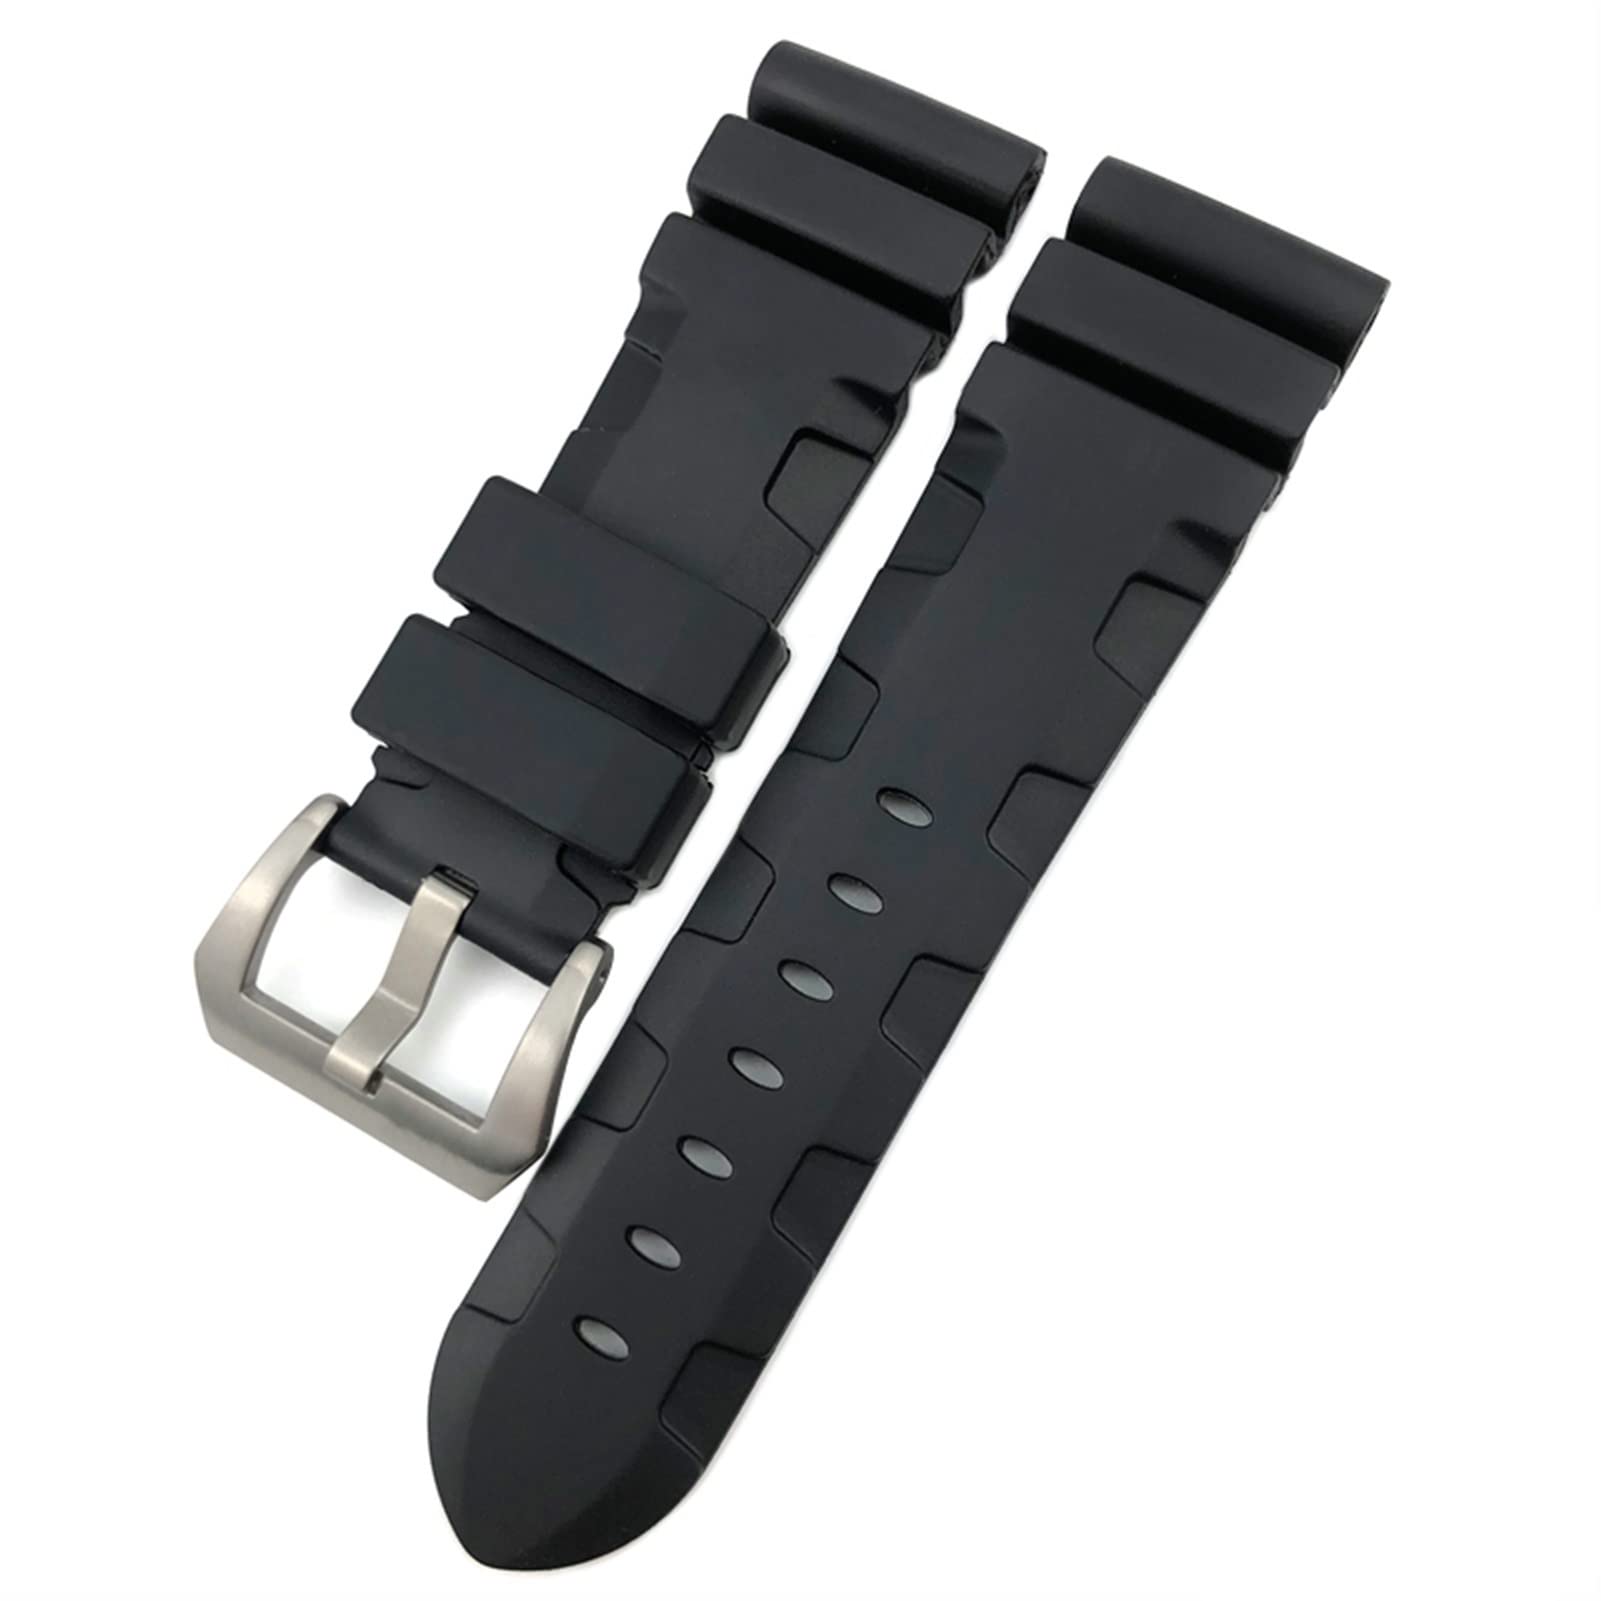 TRDYBSK Gummi-Uhrenarmband 22 mm, 24 mm, 26 mm, Silikon-Uhrenarmband für Panerai, tauchfähiges Luminor PAM wasserdichtes Armband (Farbe: schwarzer Stift, Größe: 24 mm schwarze Schnalle)